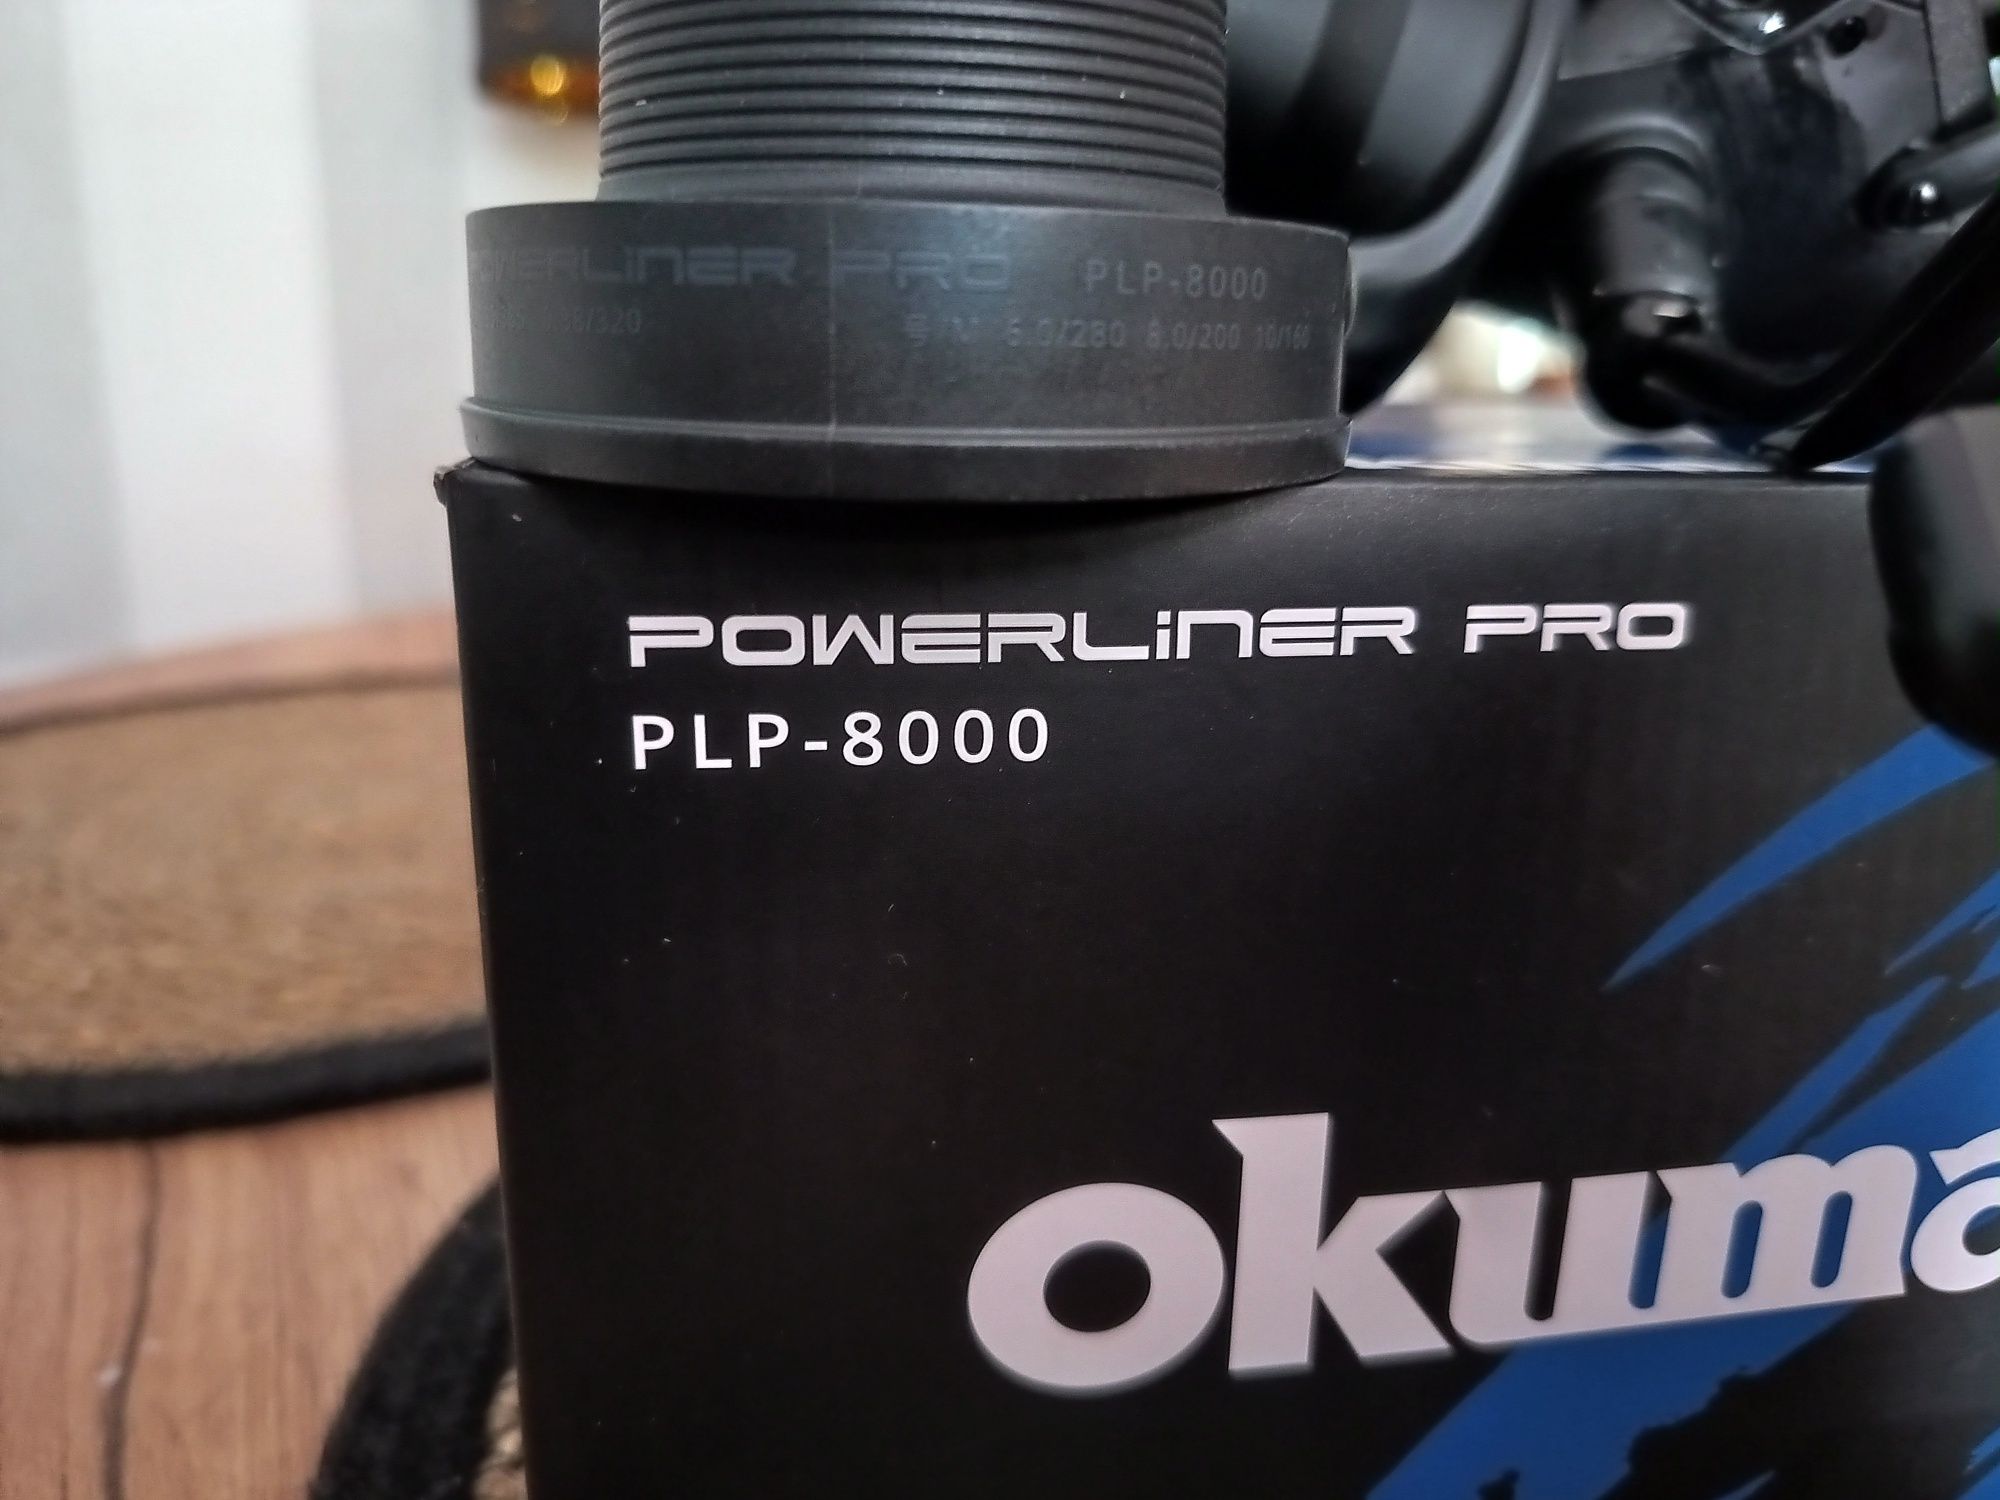 Okuma powerliner pro plp-8000